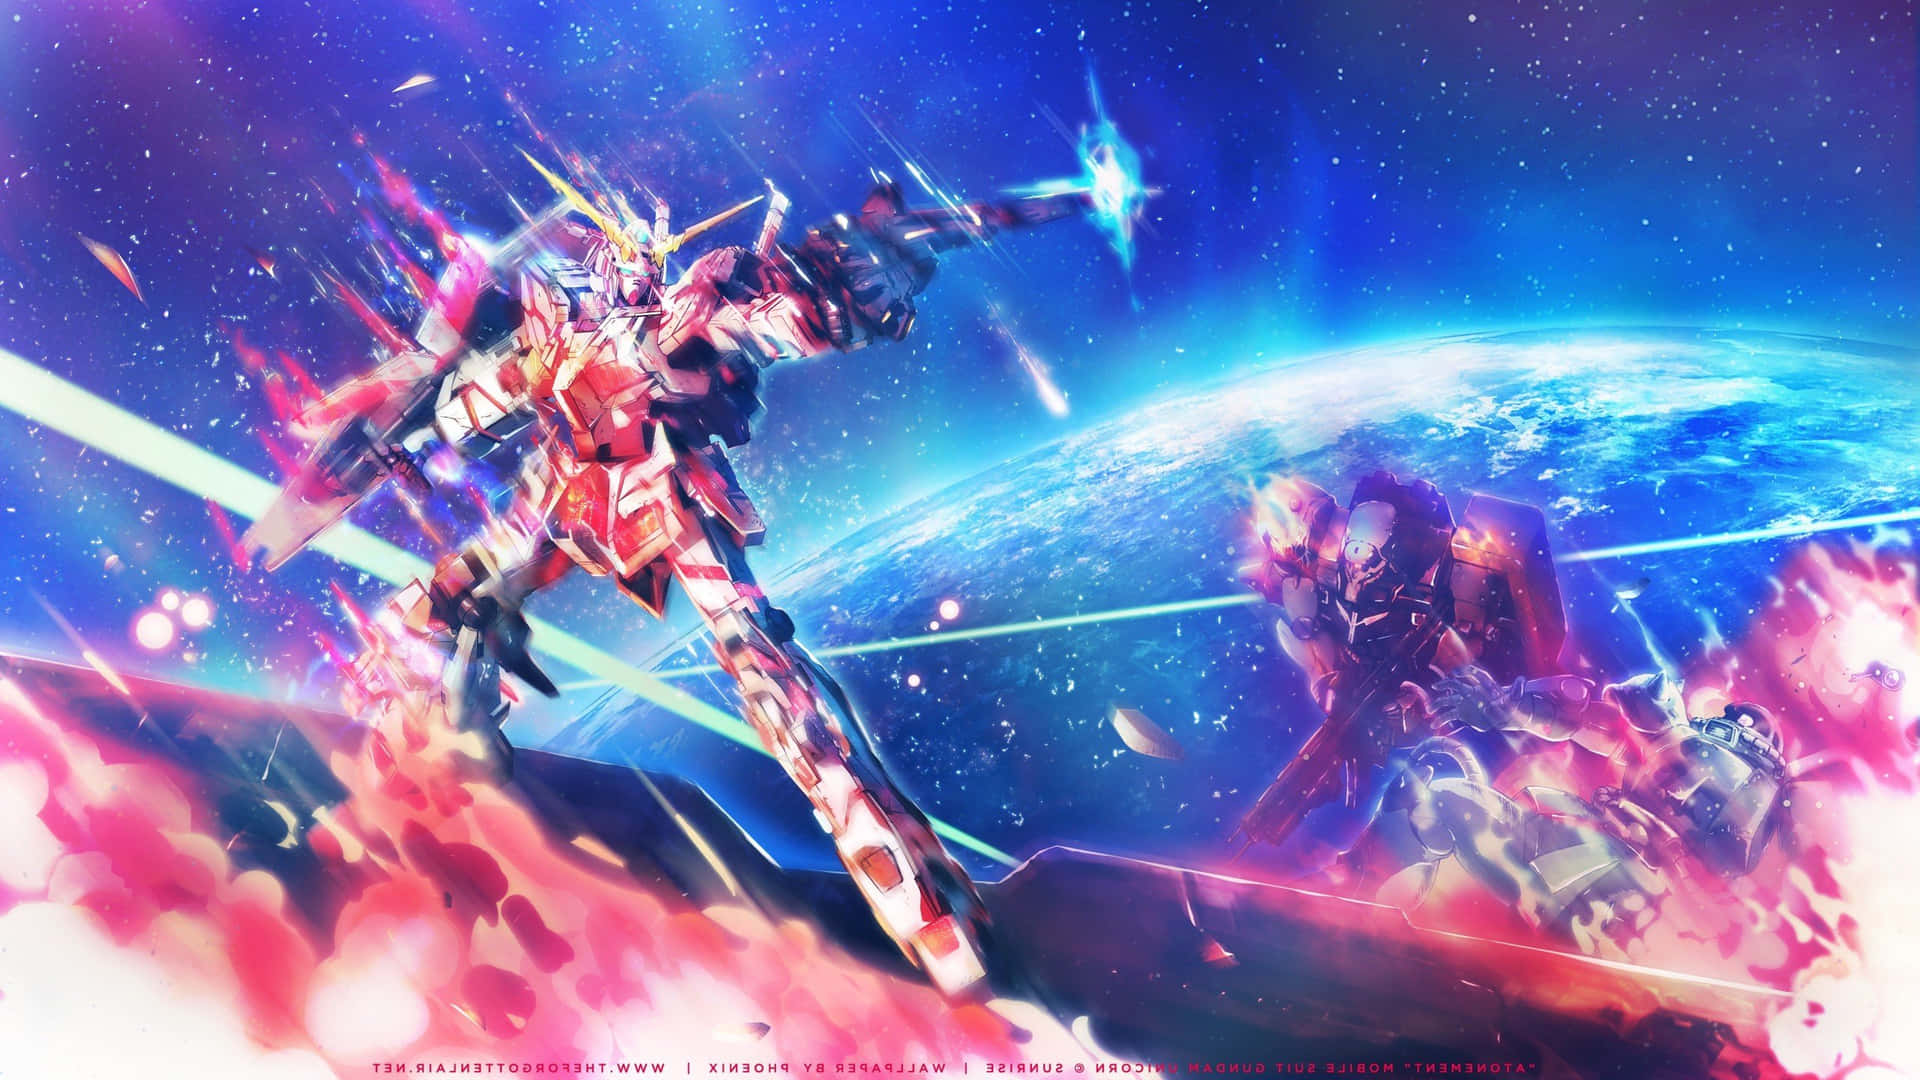 Mantenhase Atualizado Com Seu Anime Favorito Baixando Um Wallpaper De Desktop Do Gundam. Papel de Parede